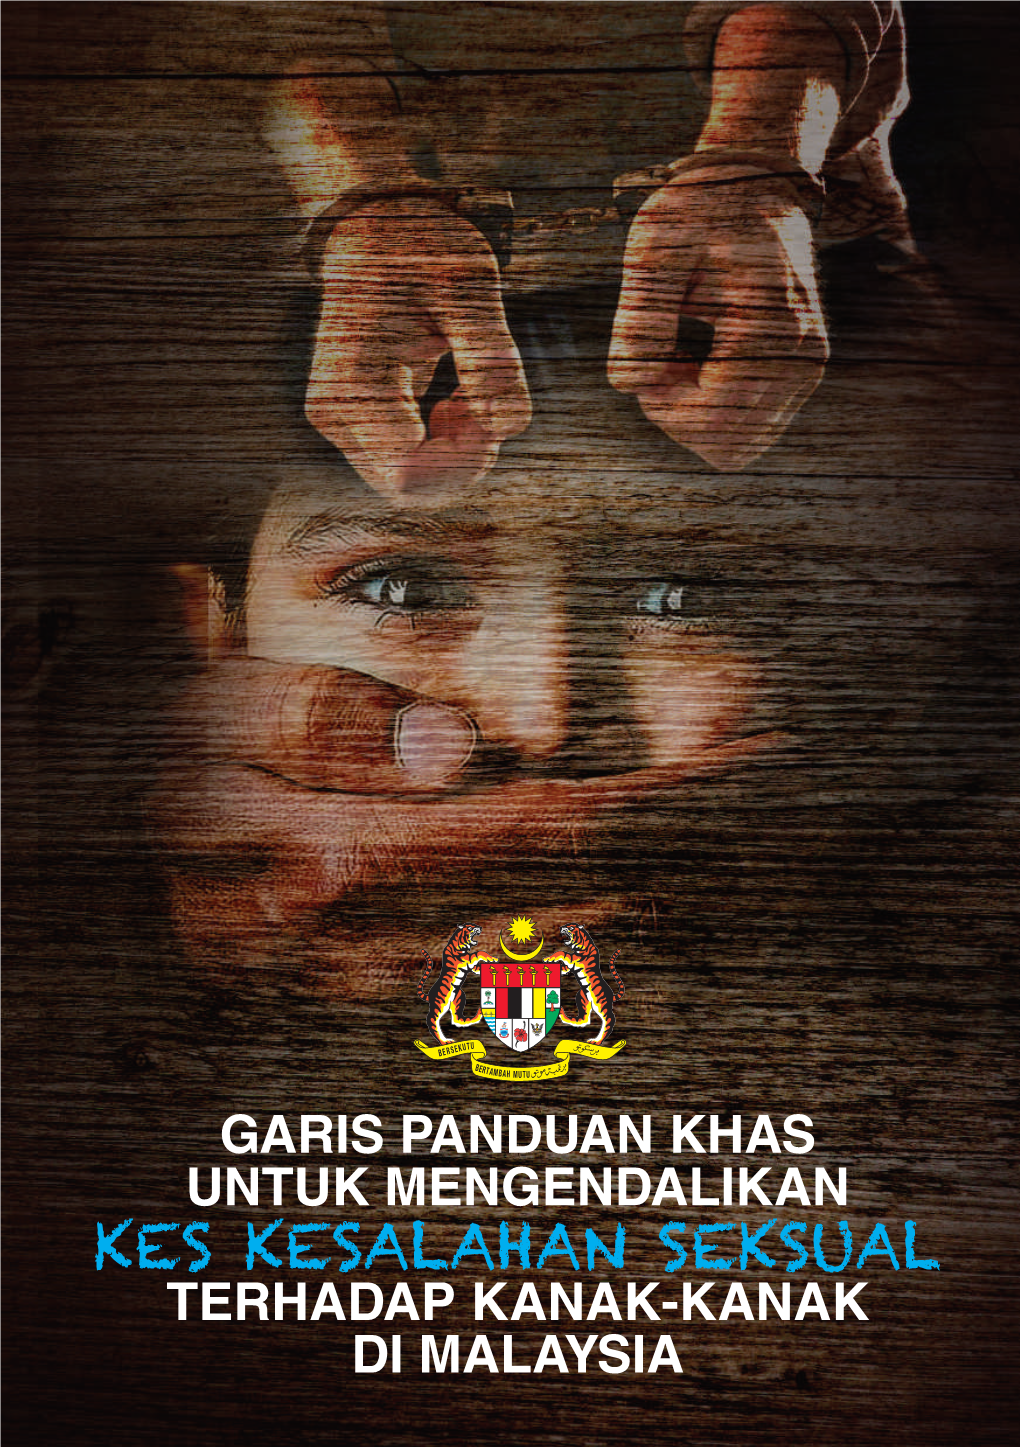 Kes Kesalahan Seksual TERHADAP KANAK-KANAK DI MALAYSIA